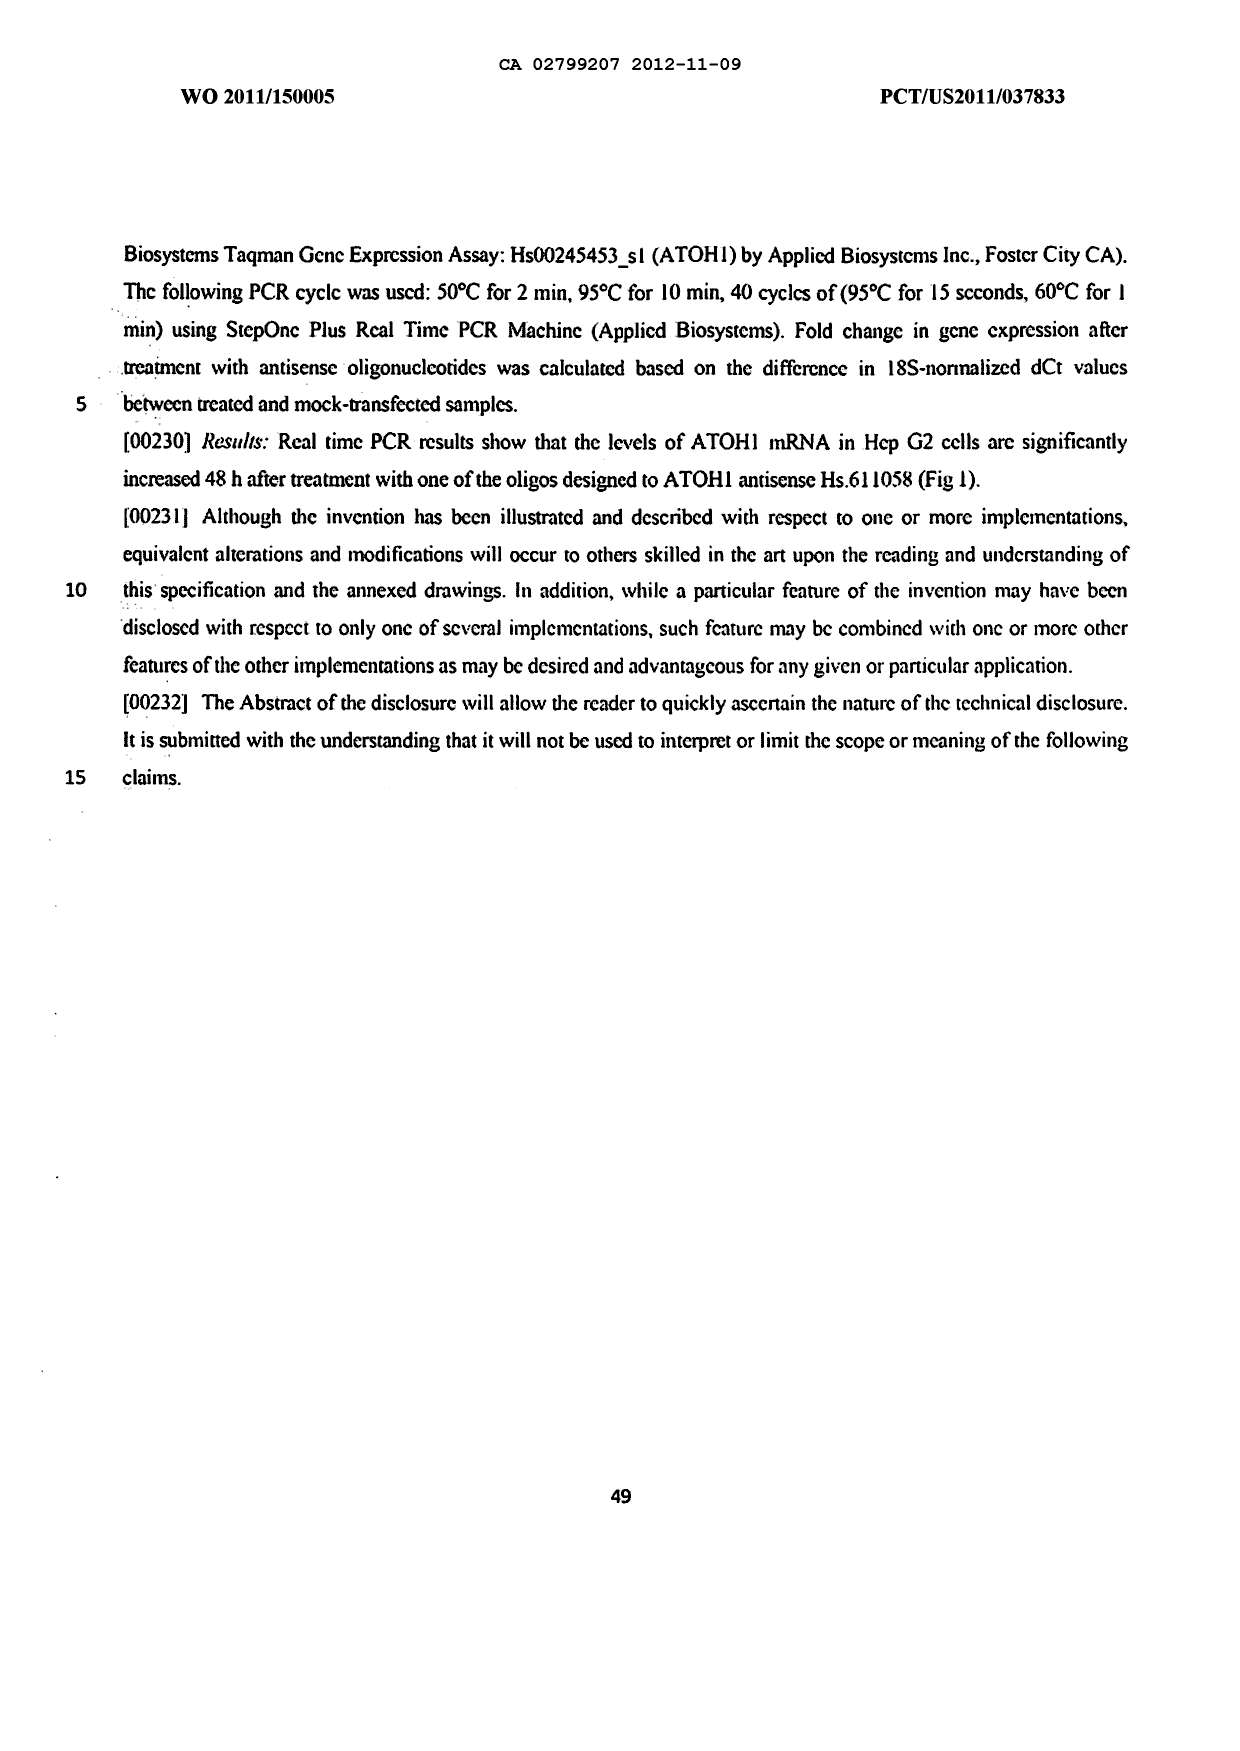 Canadian Patent Document 2799207. Description 20111209. Image 49 of 49